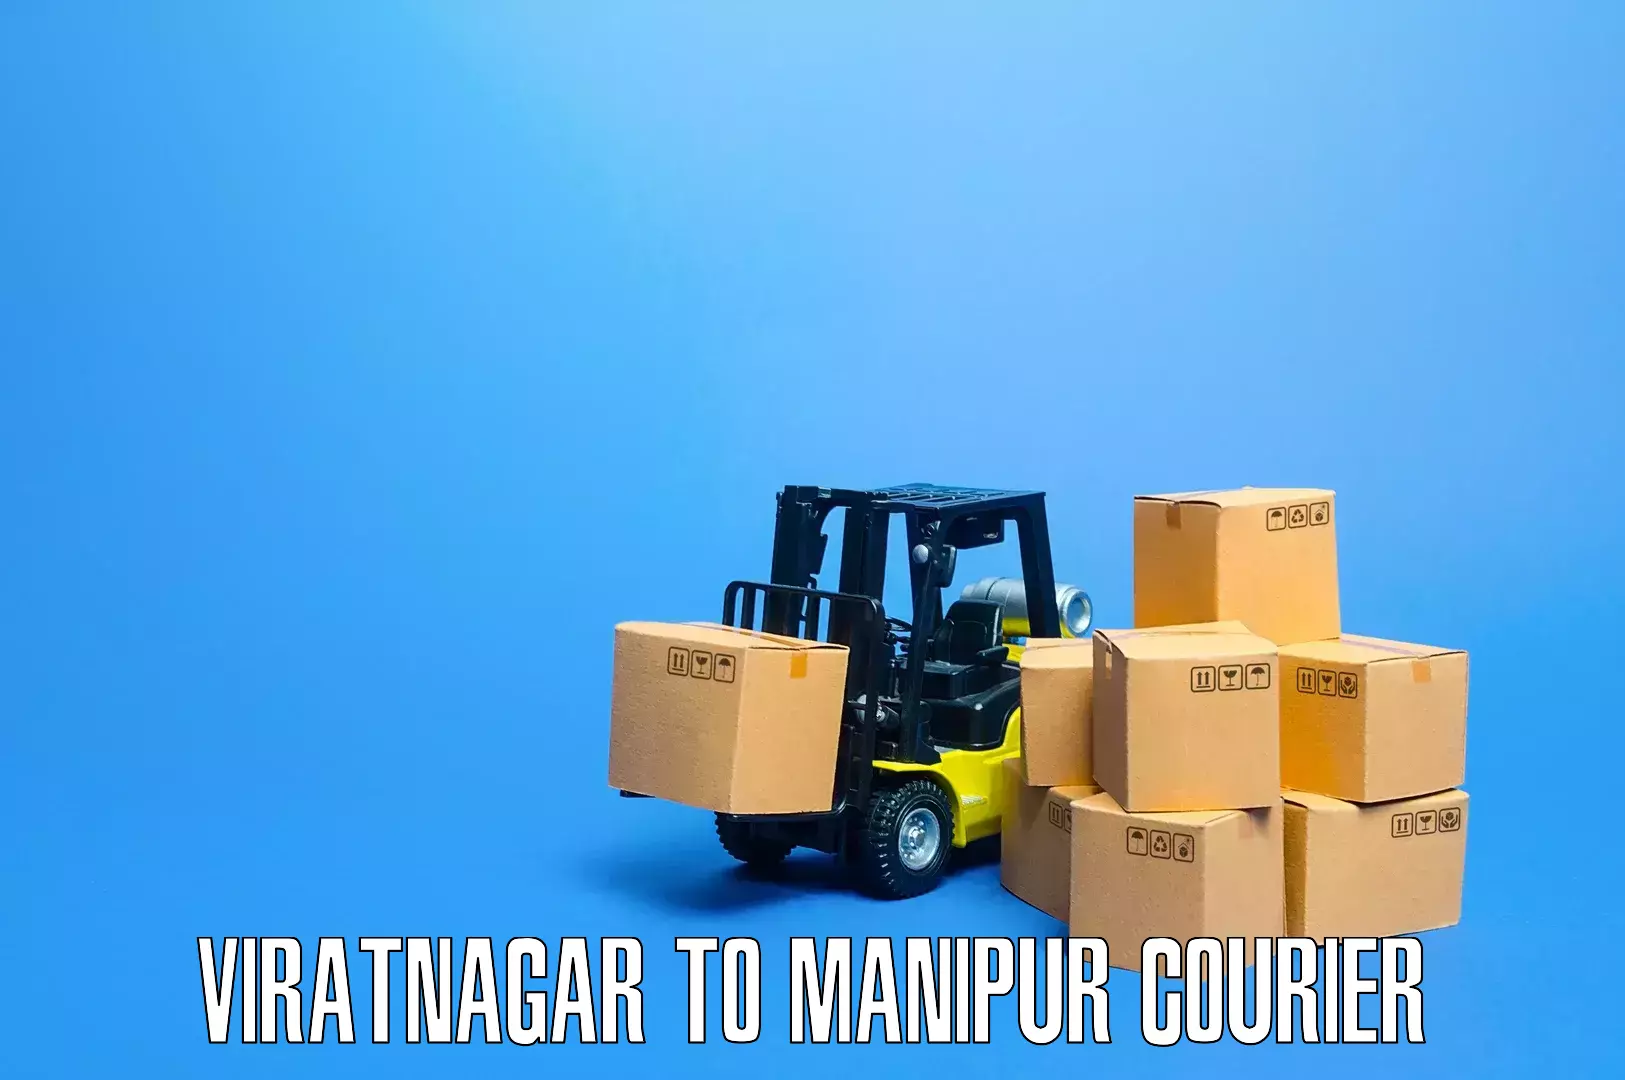 Stress-free furniture moving Viratnagar to Chandel